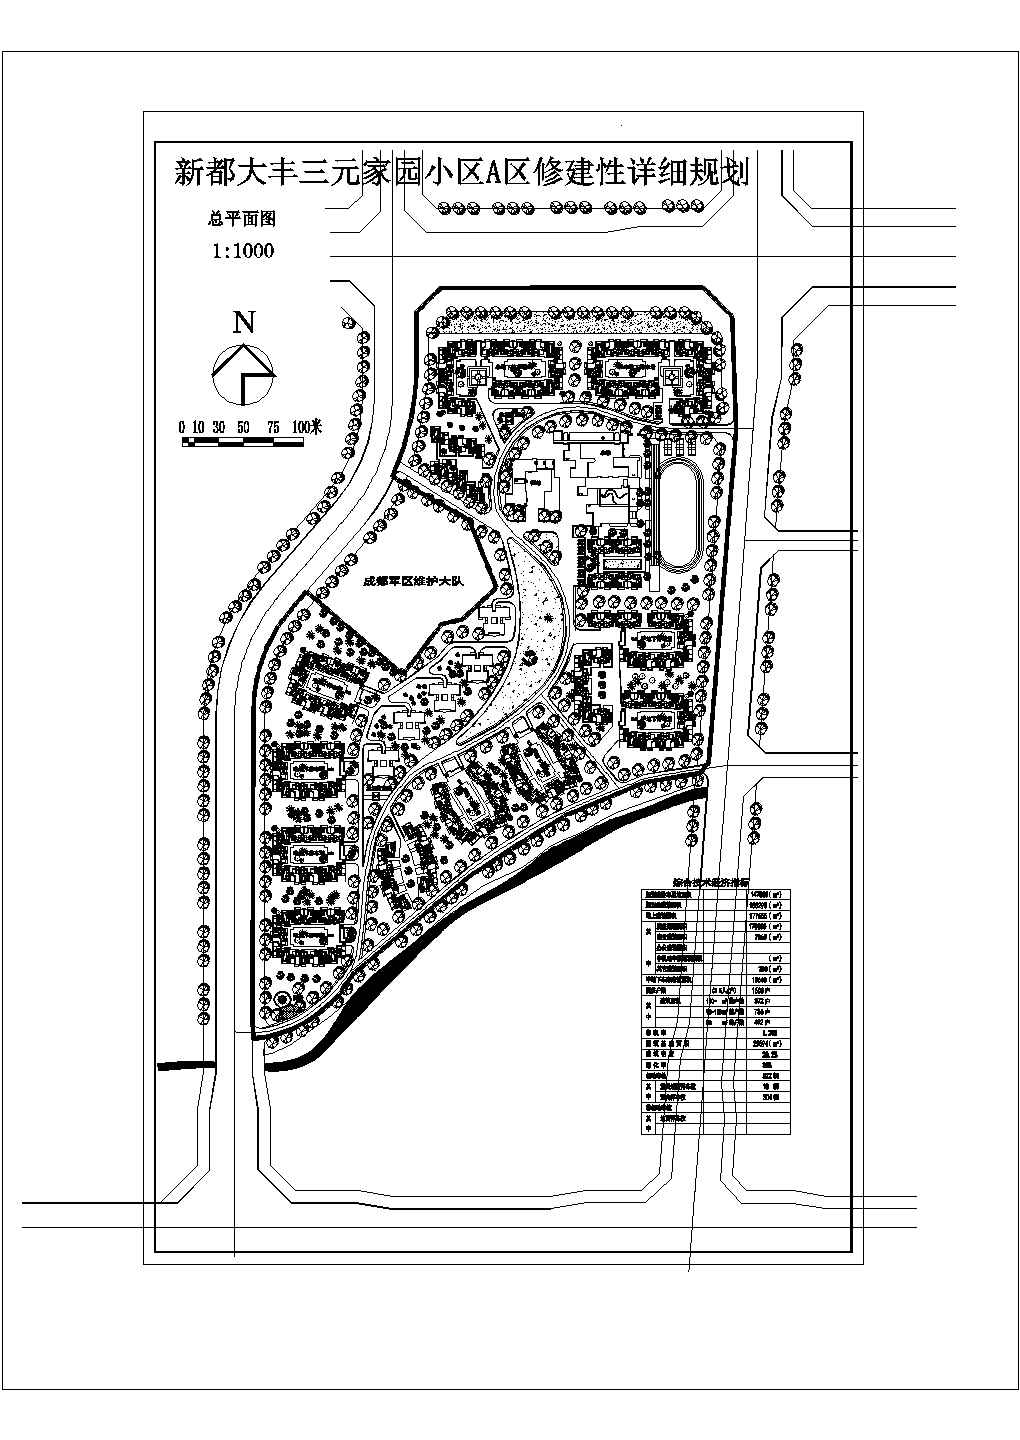 规划建设净用地147000平米居住户数1600户家园小区A区修建性详细规划总平面图图纸